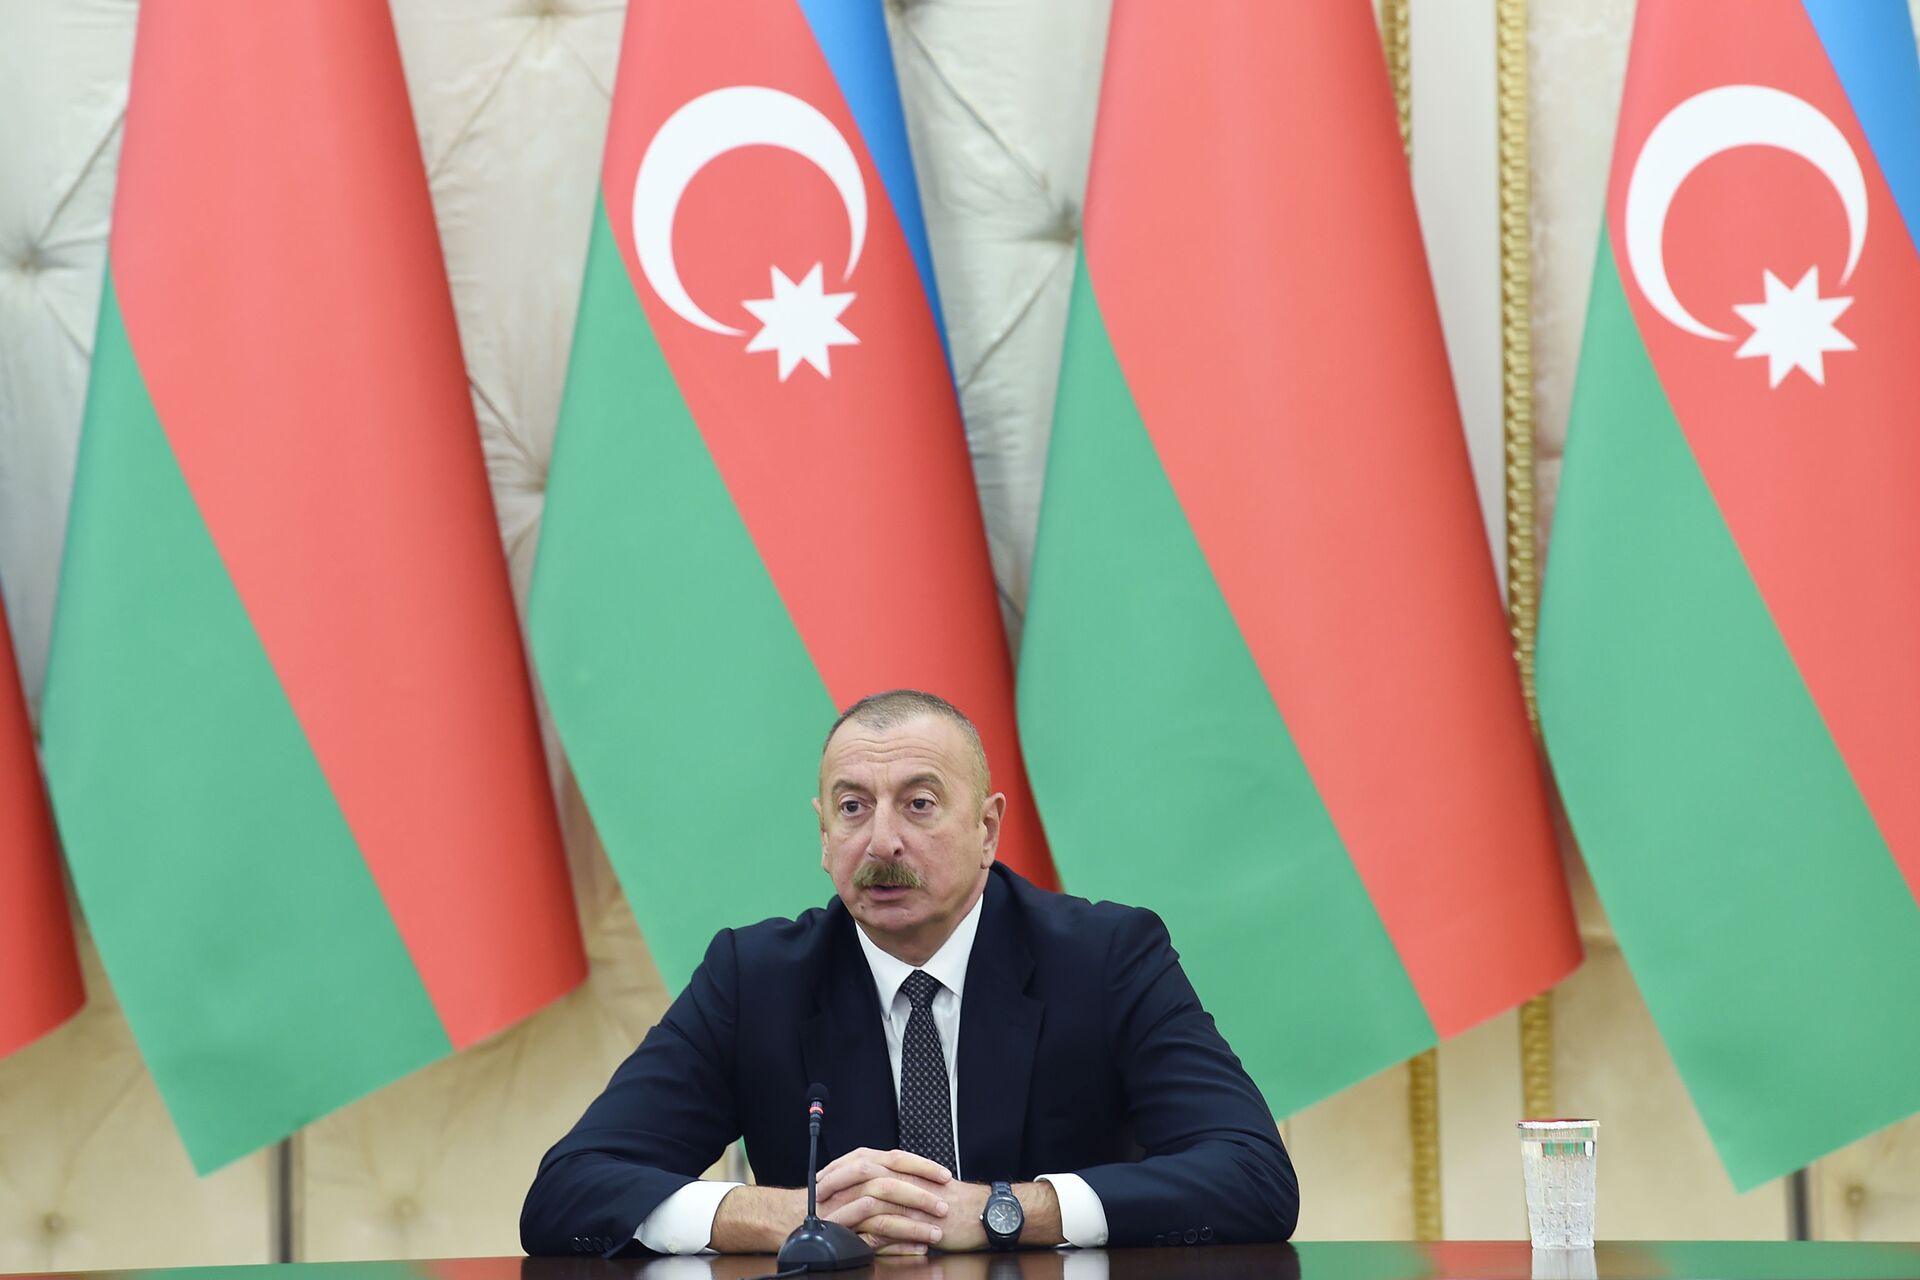 Азербайджан и Беларусь продолжат сотрудничество и поддержку - заявления глав государств - Sputnik Азербайджан, 1920, 15.04.2021